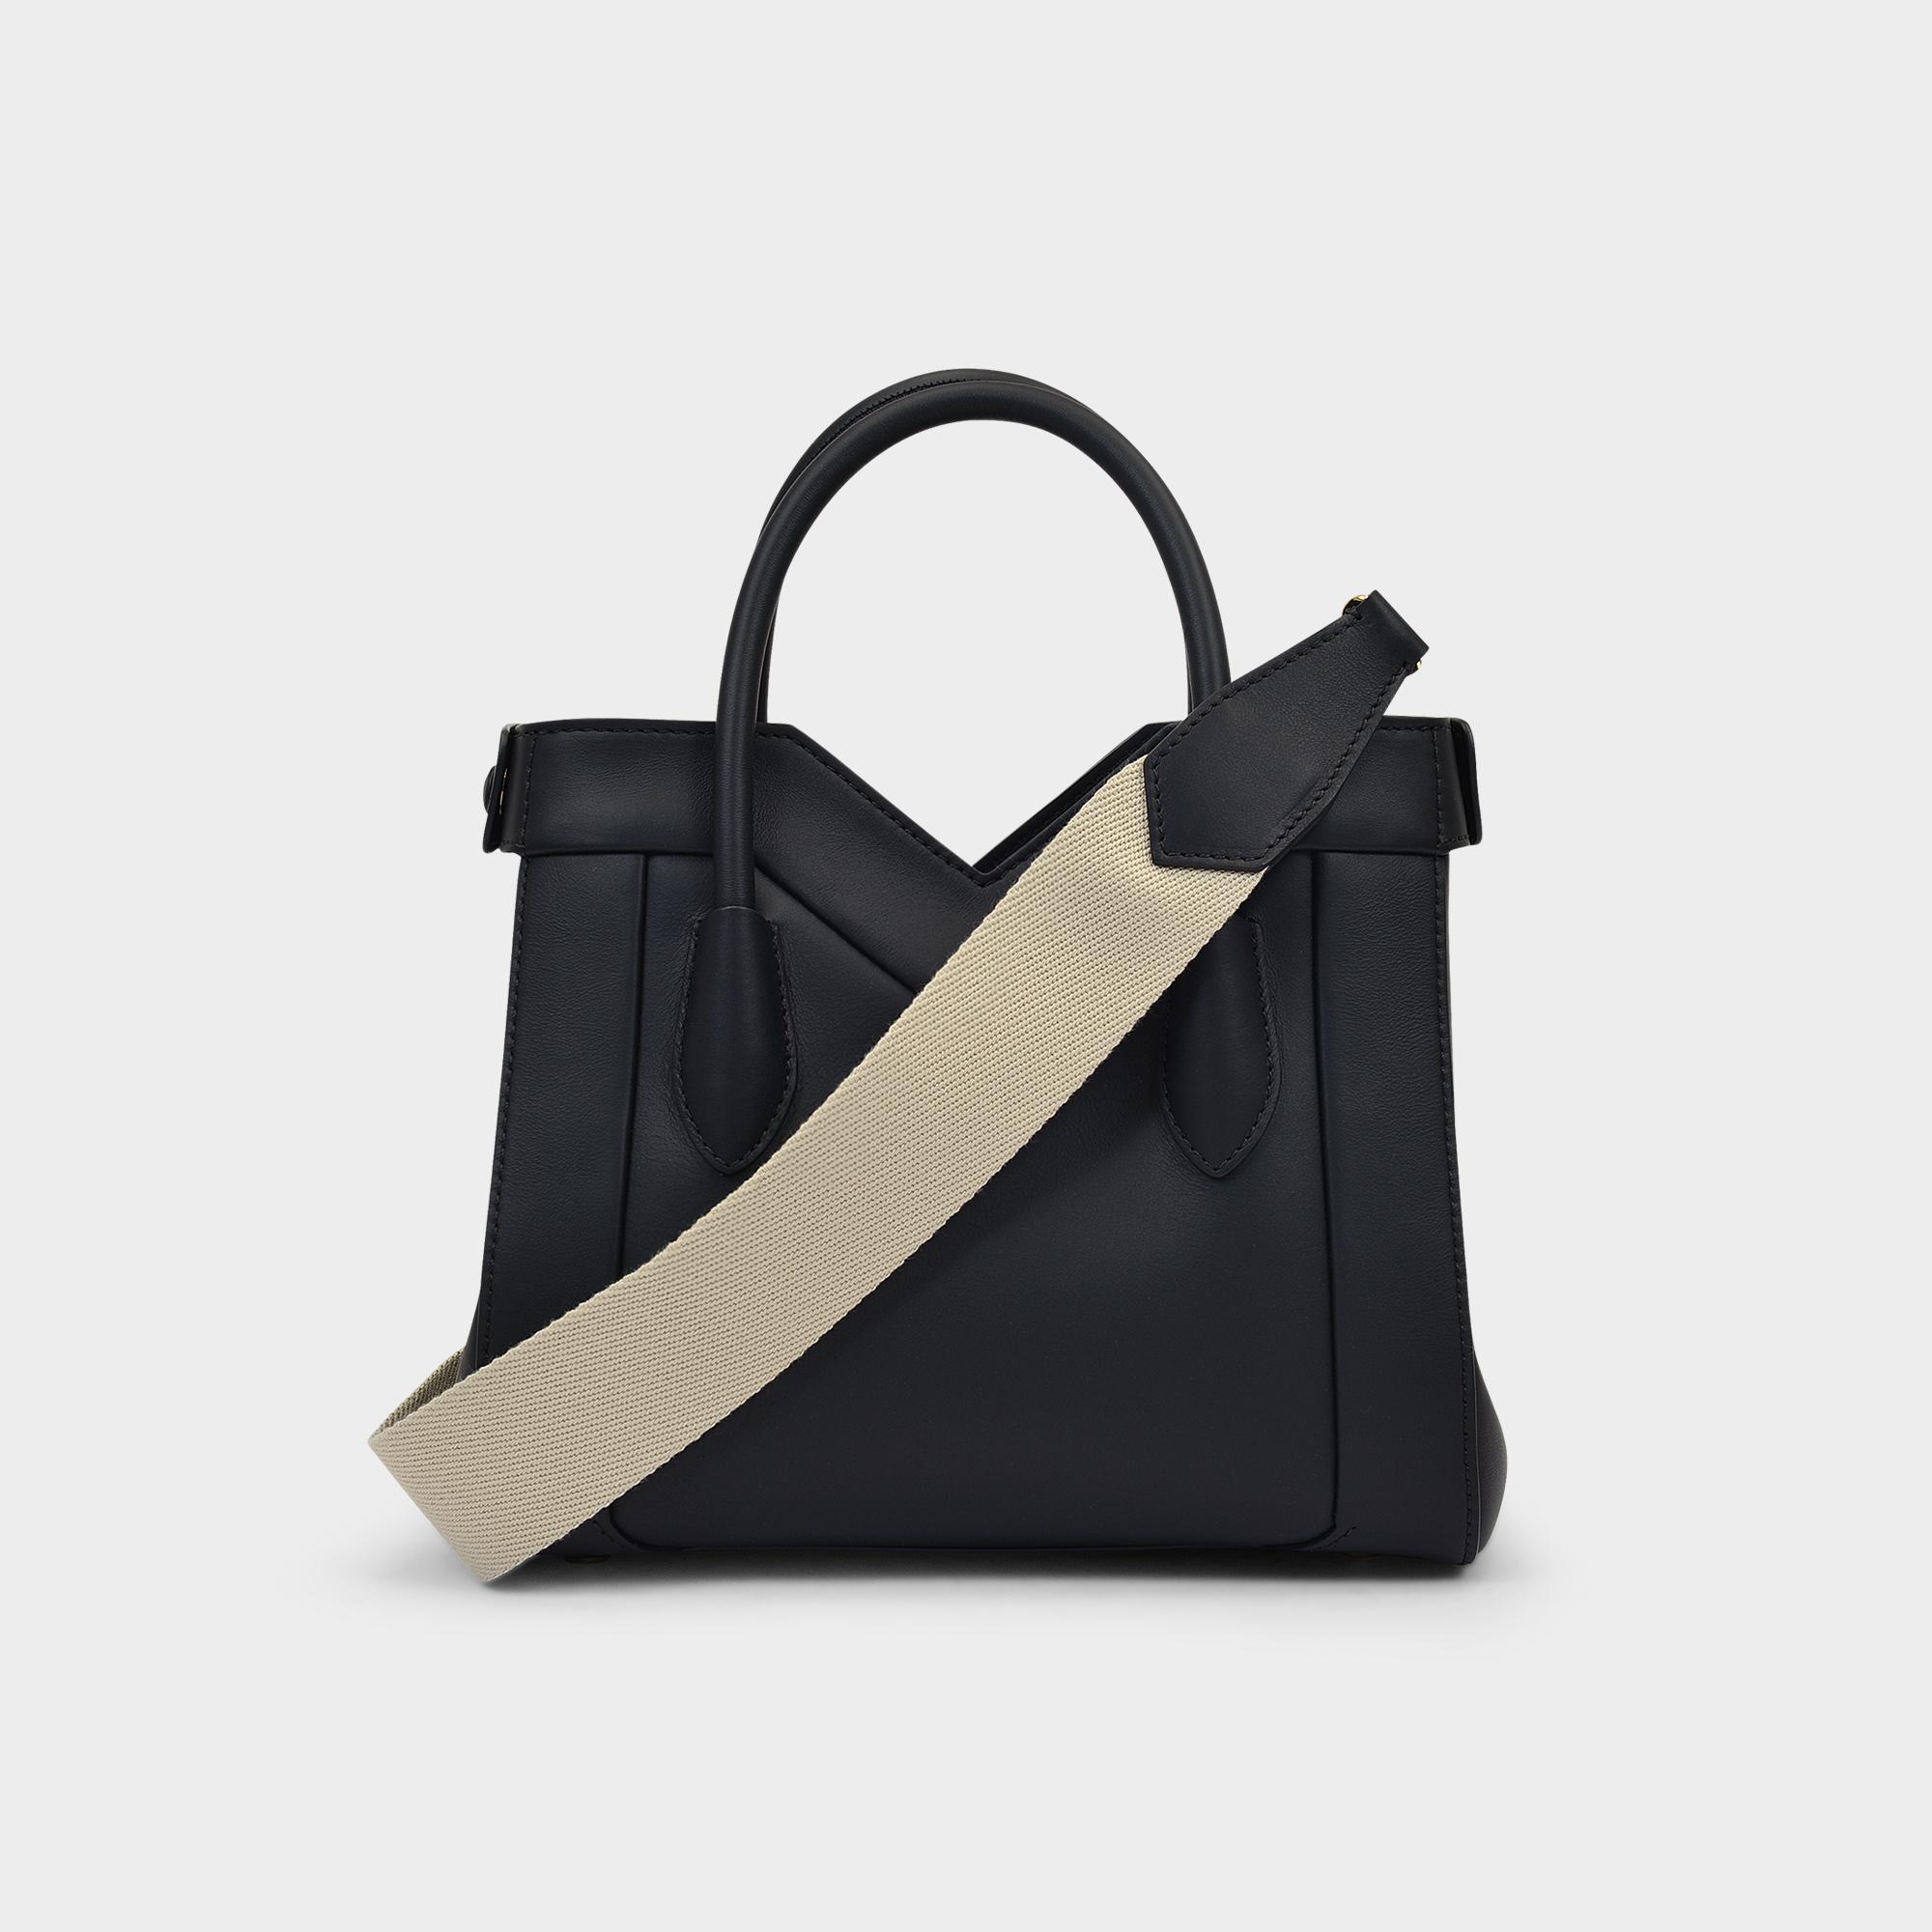 Max Mara Black Purse Shoulder Bag | eBay